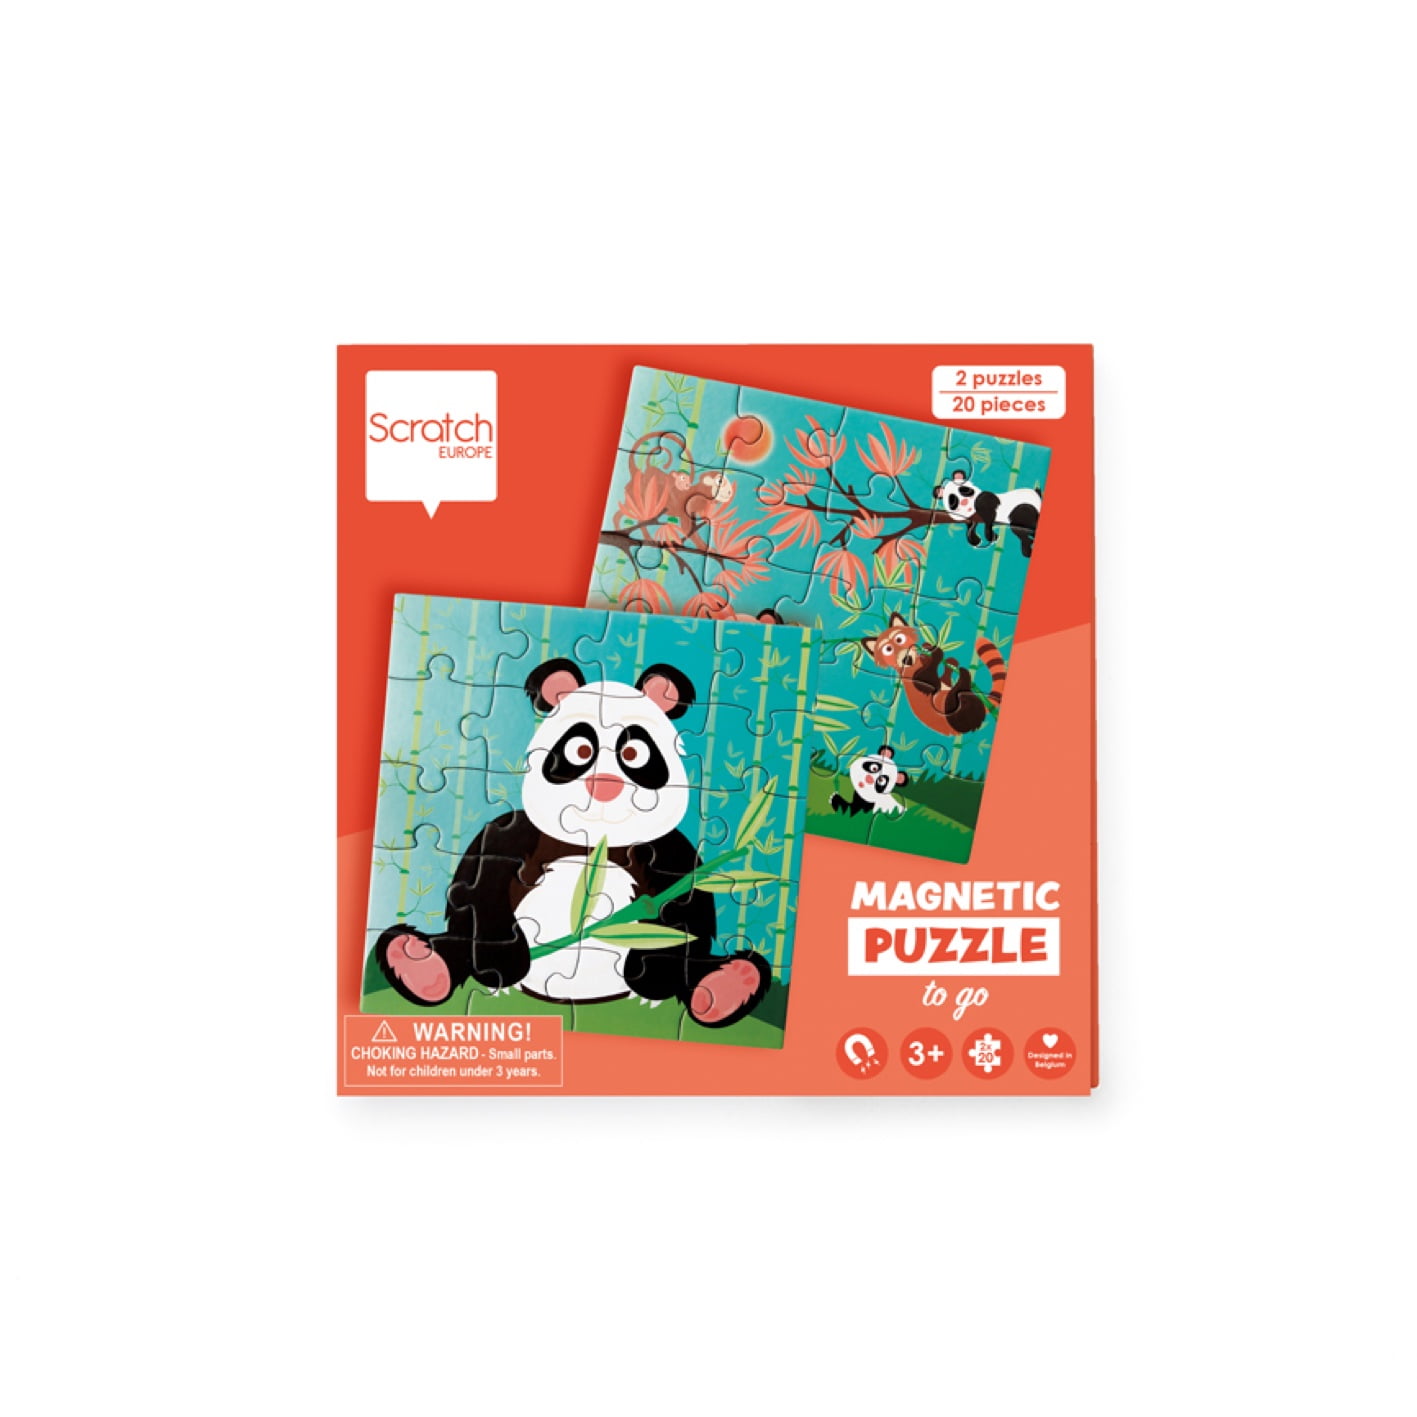 Scratch Magnētiskā puzles grāmata - Panda lācis